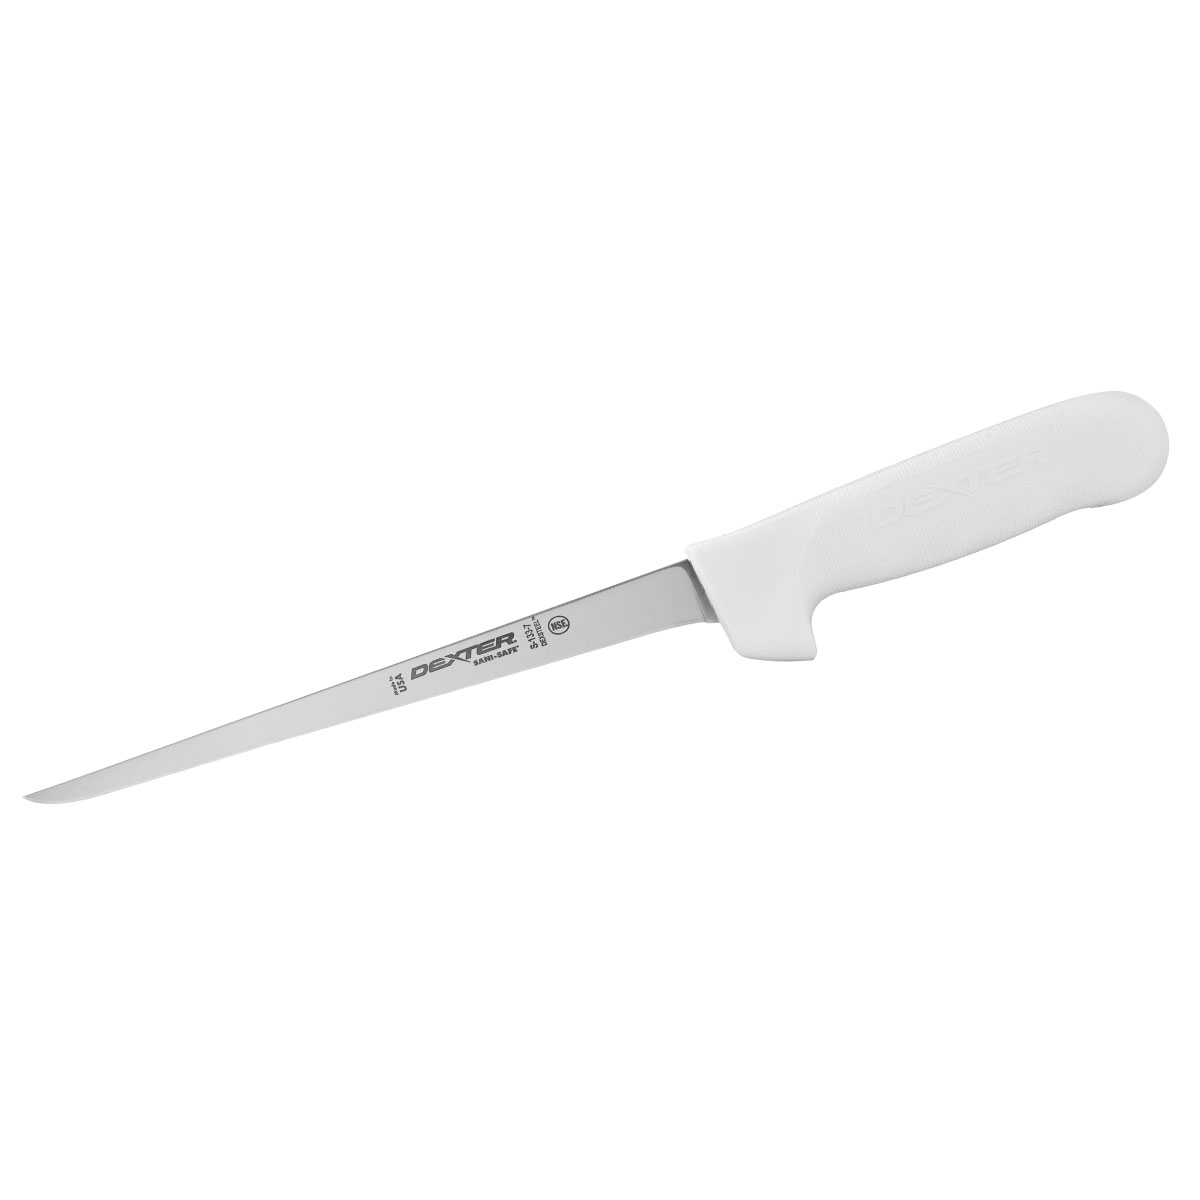 Dexter Filleting Knife, 18cm (7) - Narrow, Flexible, Sanisafe - White